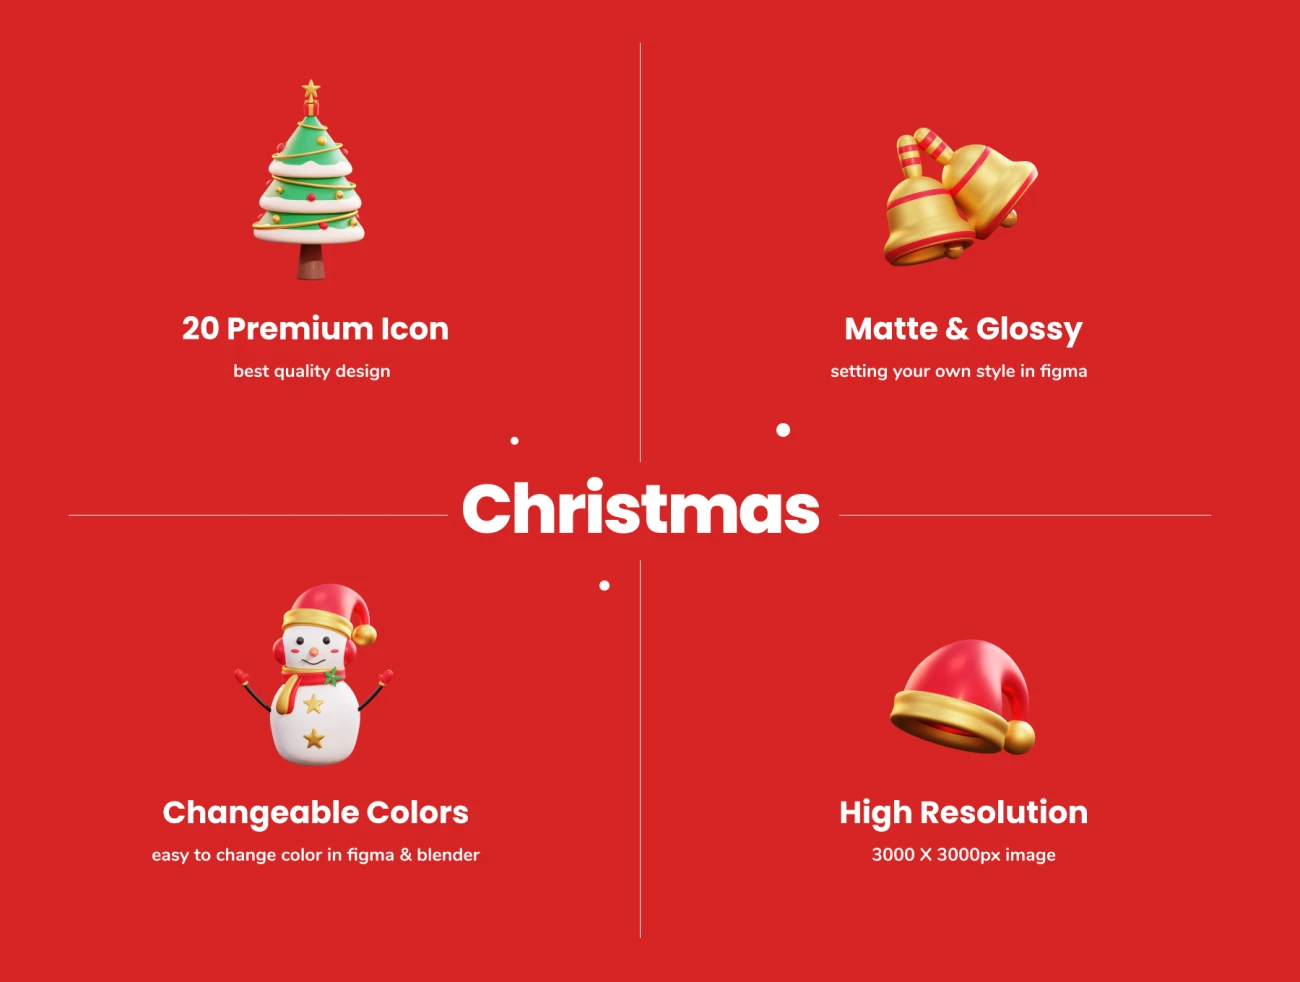 20款3D矢量圣诞节插画图标素材下载 Christmas - 3D Icon Premium Pack .blender .psd .figma-3D/图标-到位啦UI